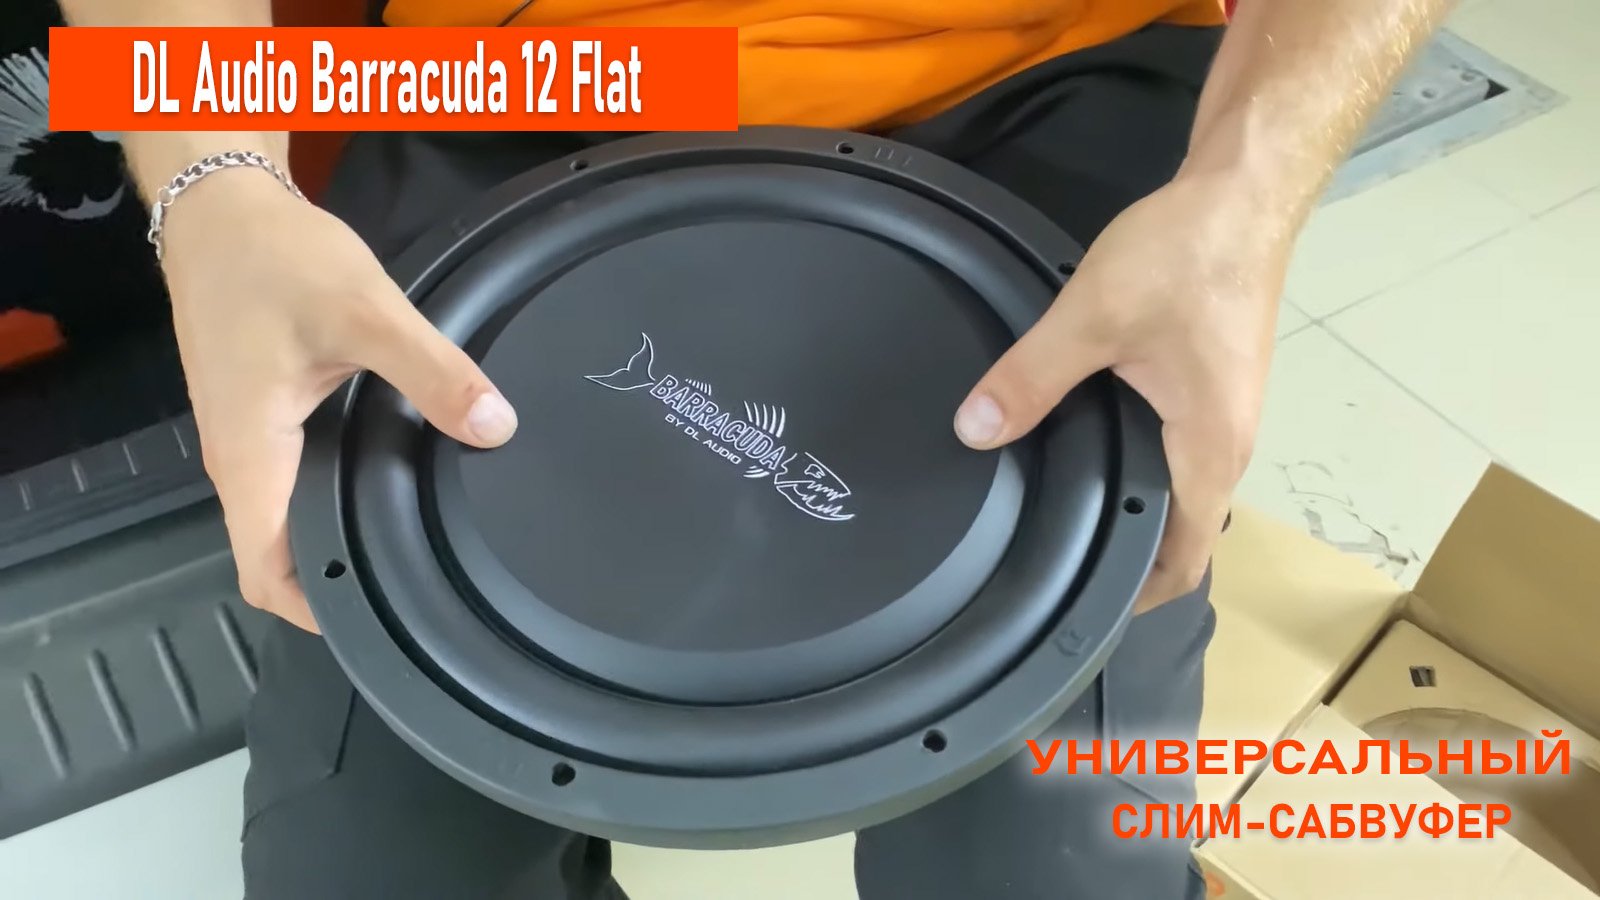 Barracuda 10 flat. DL Audio Barracuda 12a Flat. Сабвуфер DL Audio Barracuda 8 Flat. DL Audio Barracuda 10 Flat. Сабвуфер DL Audio Barracuda 12a Flat.